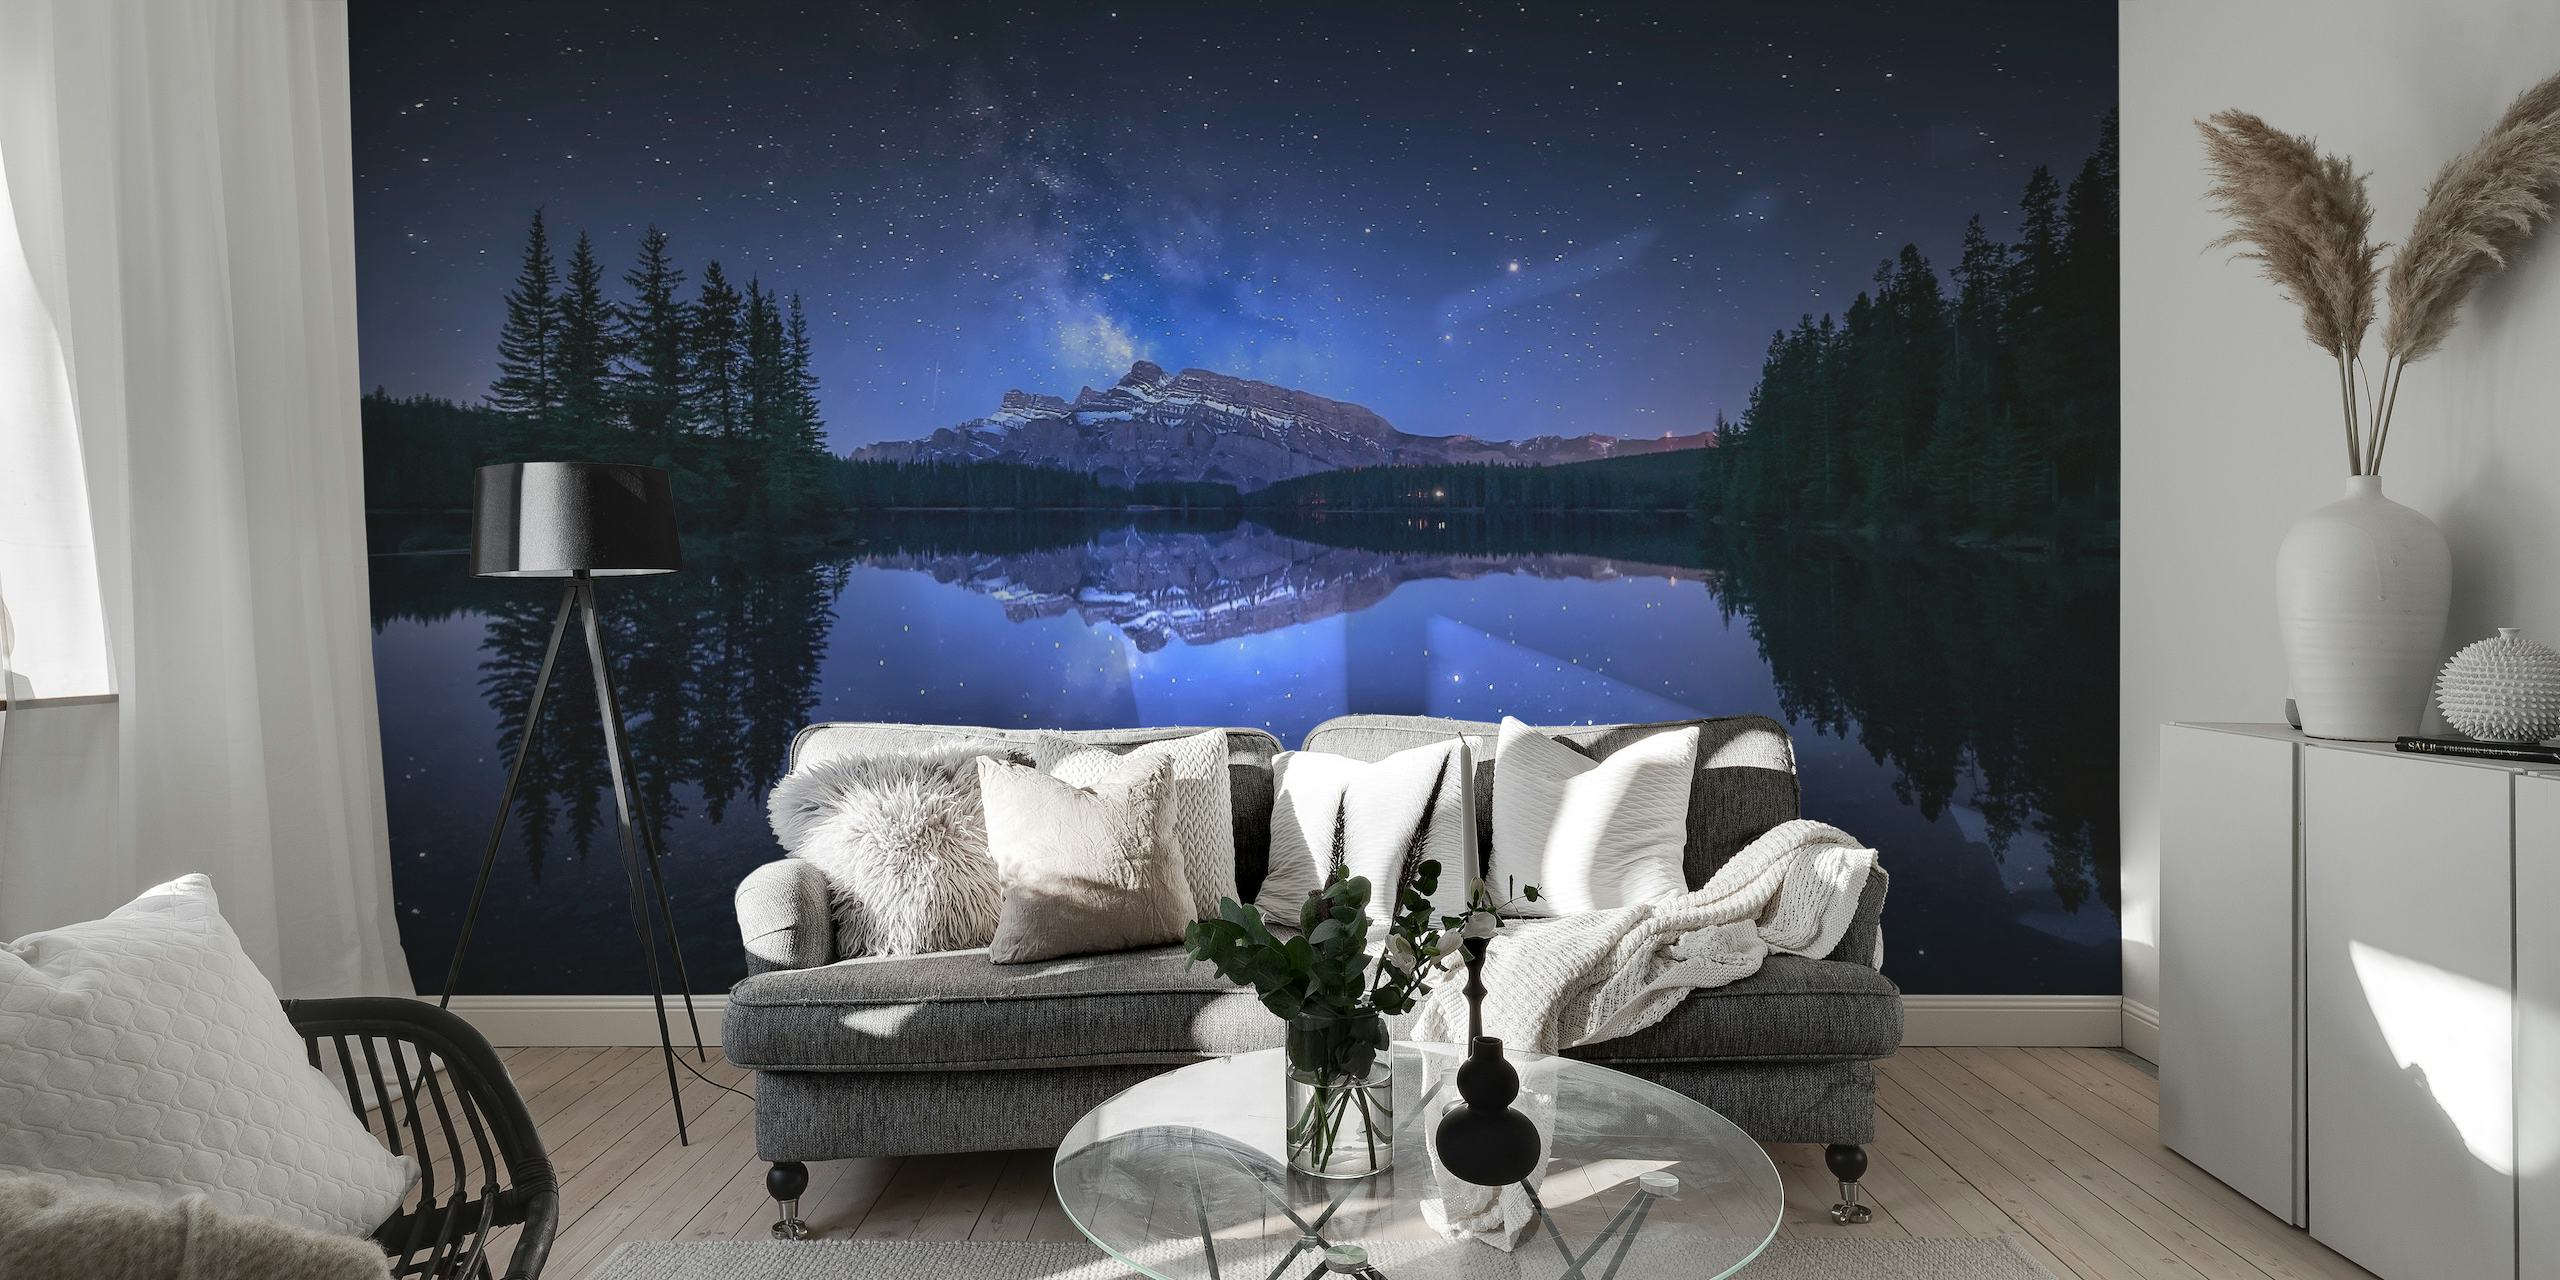 Stjerneklar nat over Two Jack Lake med skovsilhuet og fascinerende refleksion i vandvægmaleriet